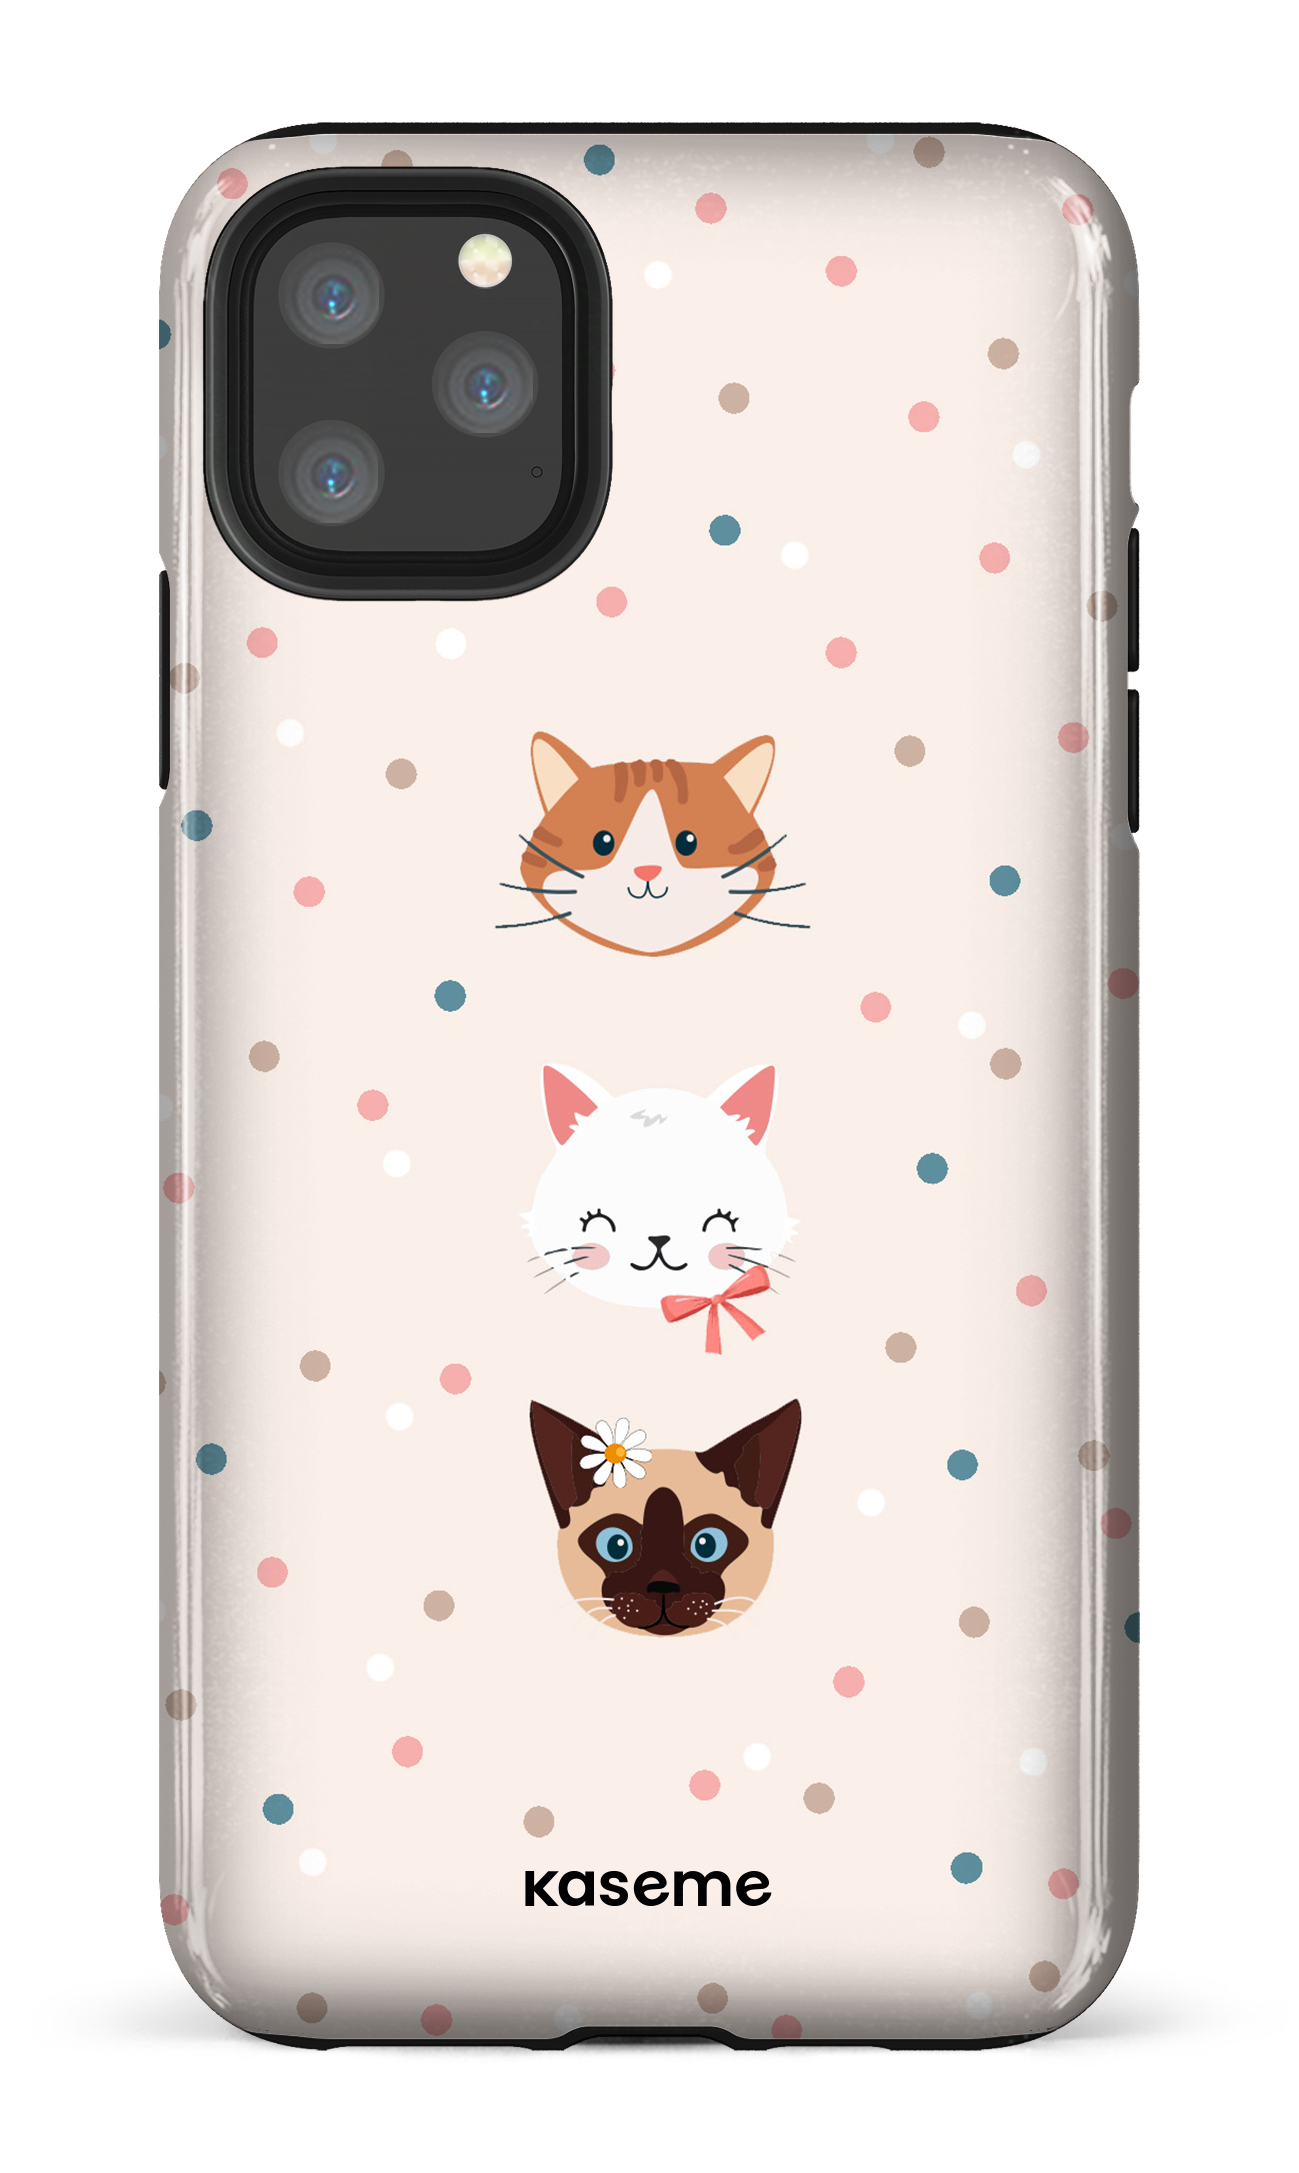 Cat lover - iPhone 11 Pro Max